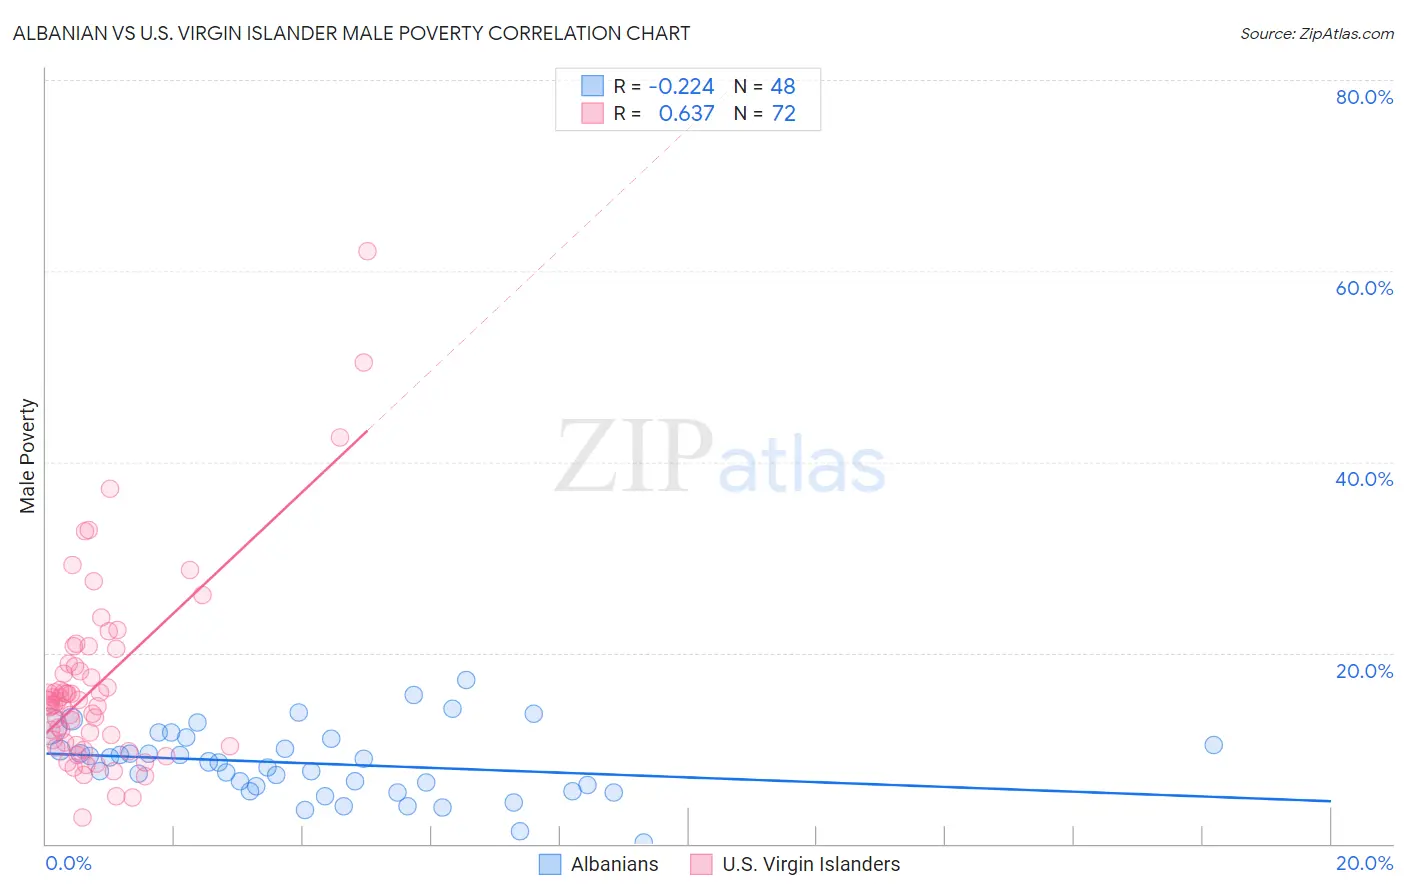 Albanian vs U.S. Virgin Islander Male Poverty